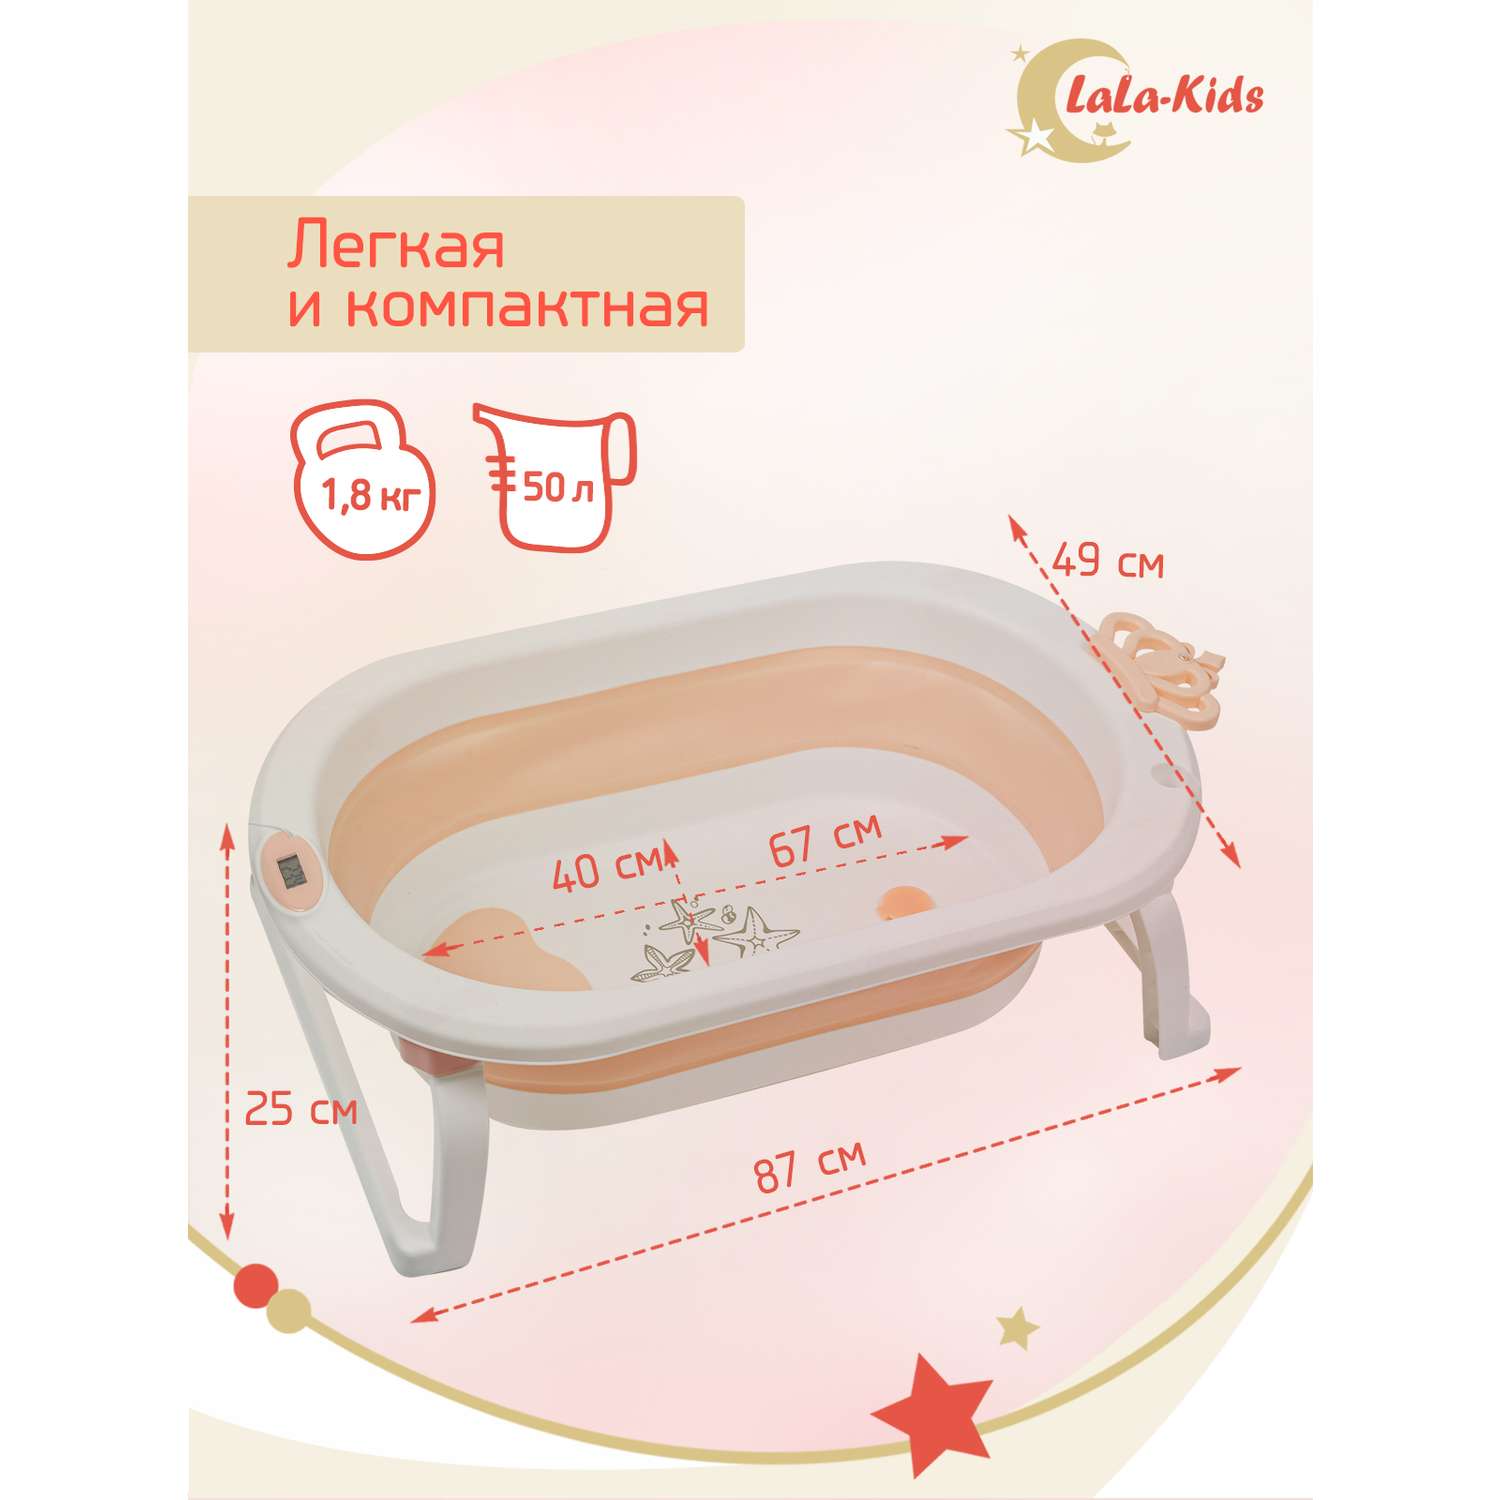 Детская ванночка с термометром LaLa-Kids складная для купания новорожденных с матрасиком в комплекте - фото 8